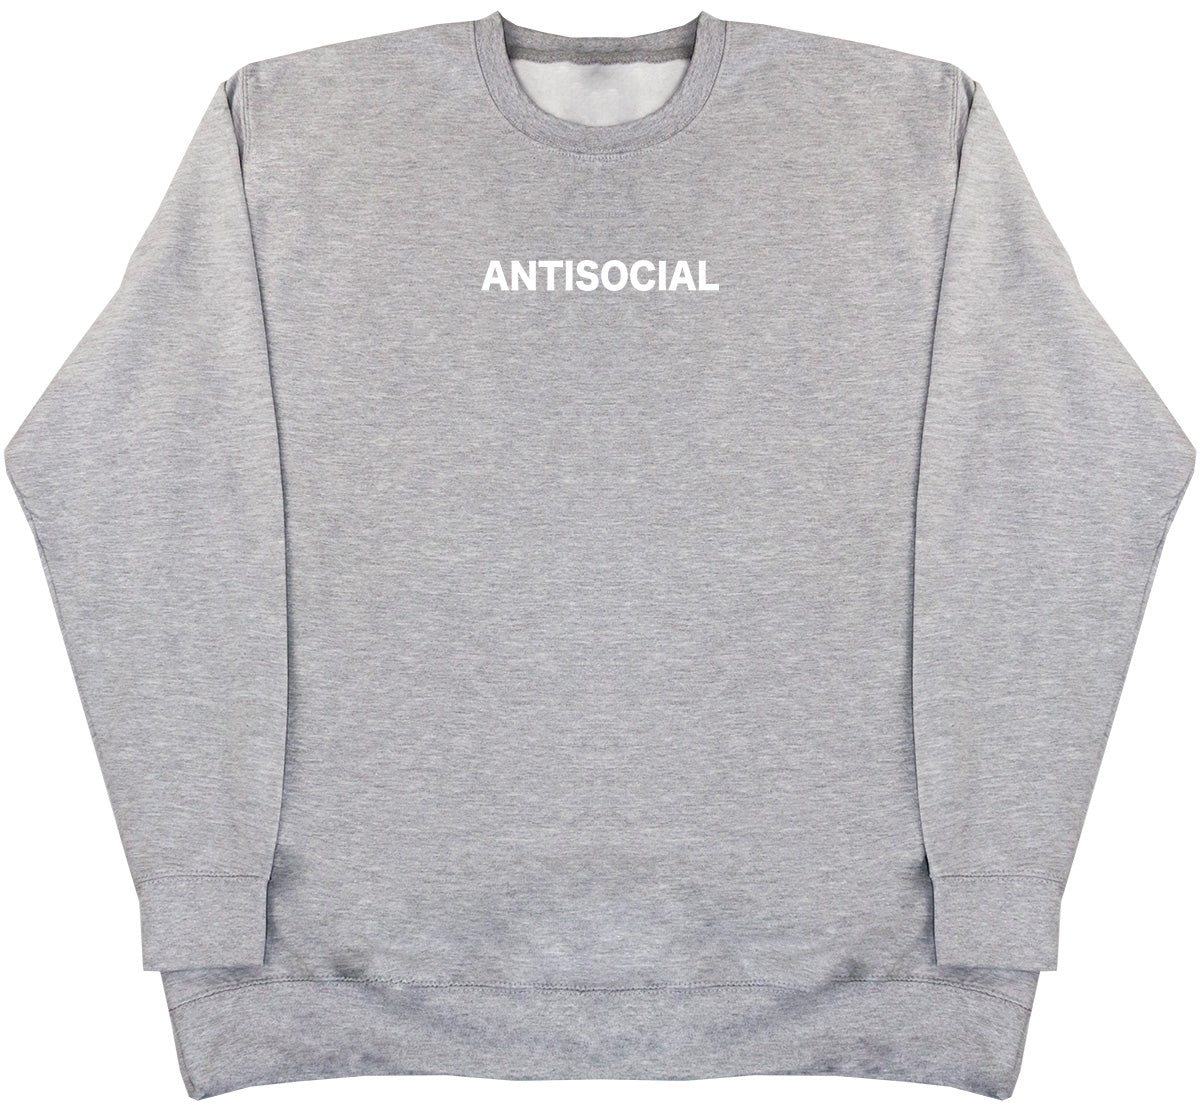 Antisocial - Huge Oversized Comfy Original Sweater